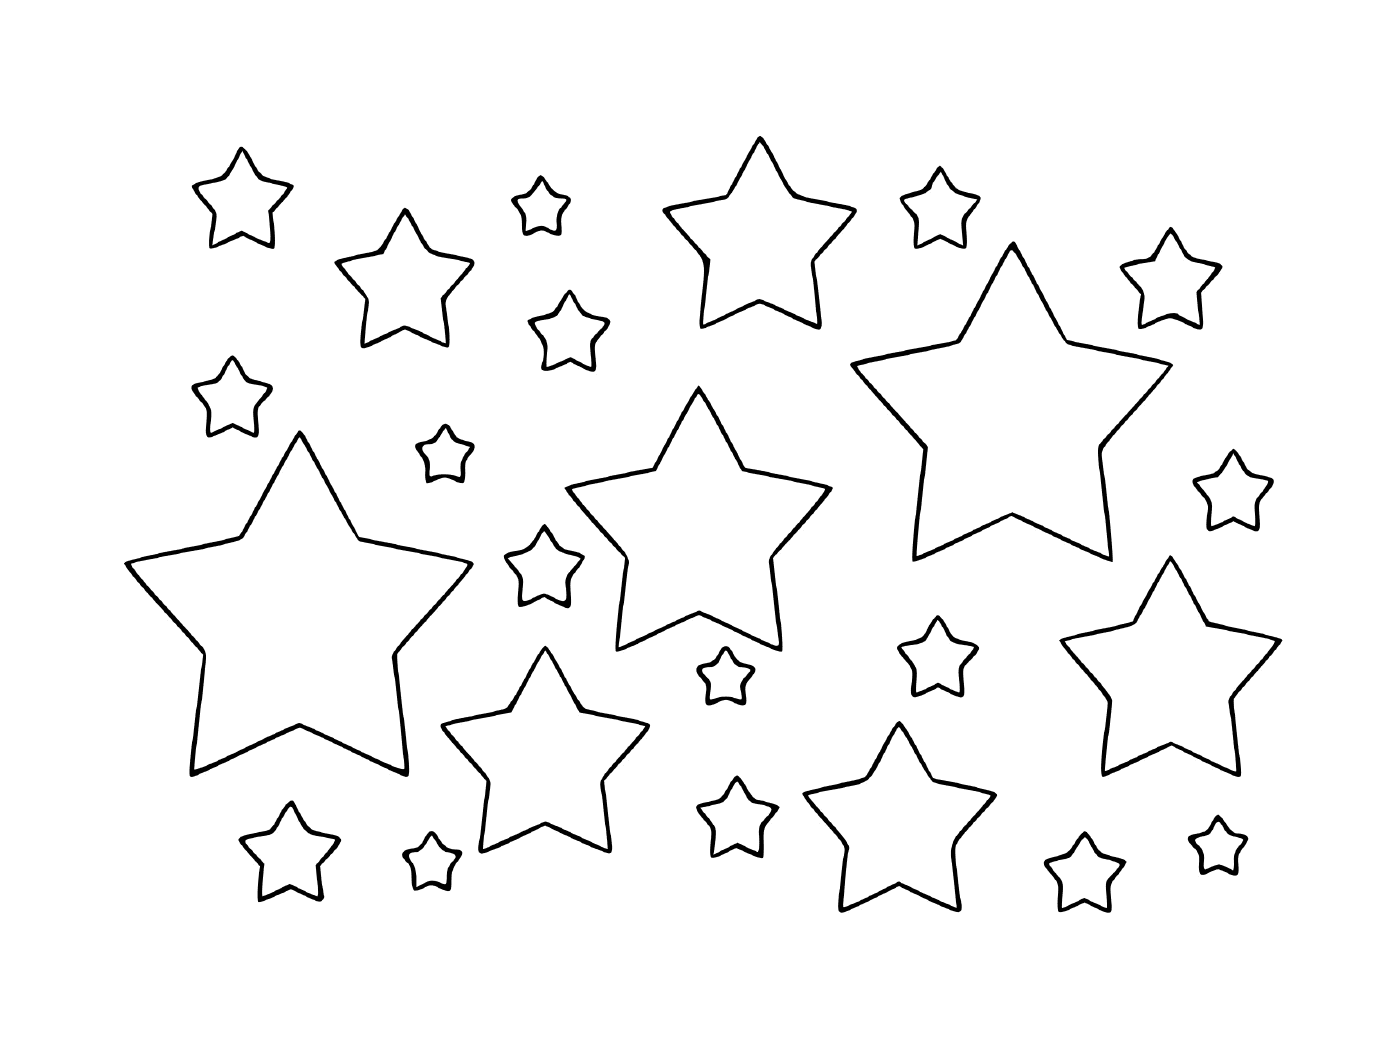   Un monde rempli d'étoiles 